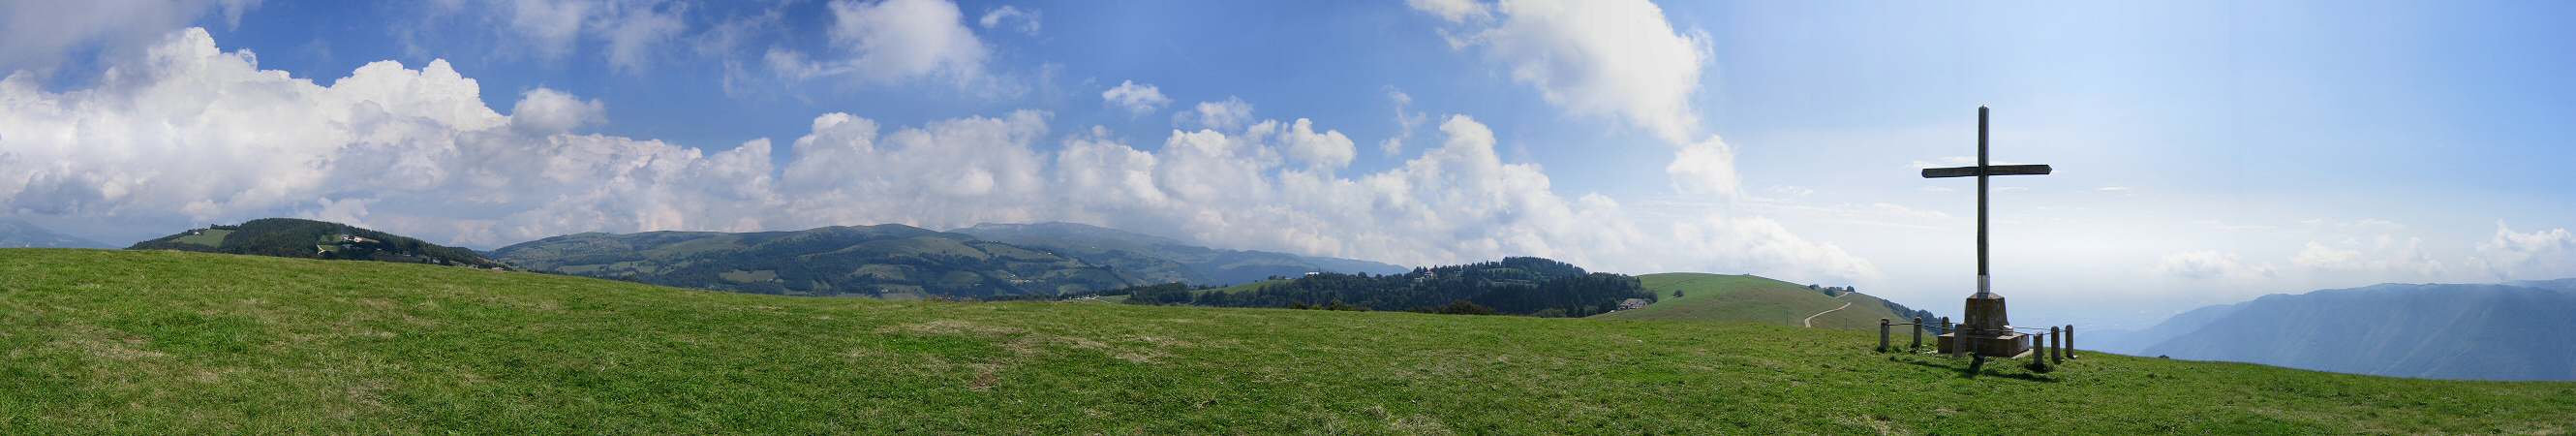 Col Fenilon, Monte Grappa - fotografia panoramica